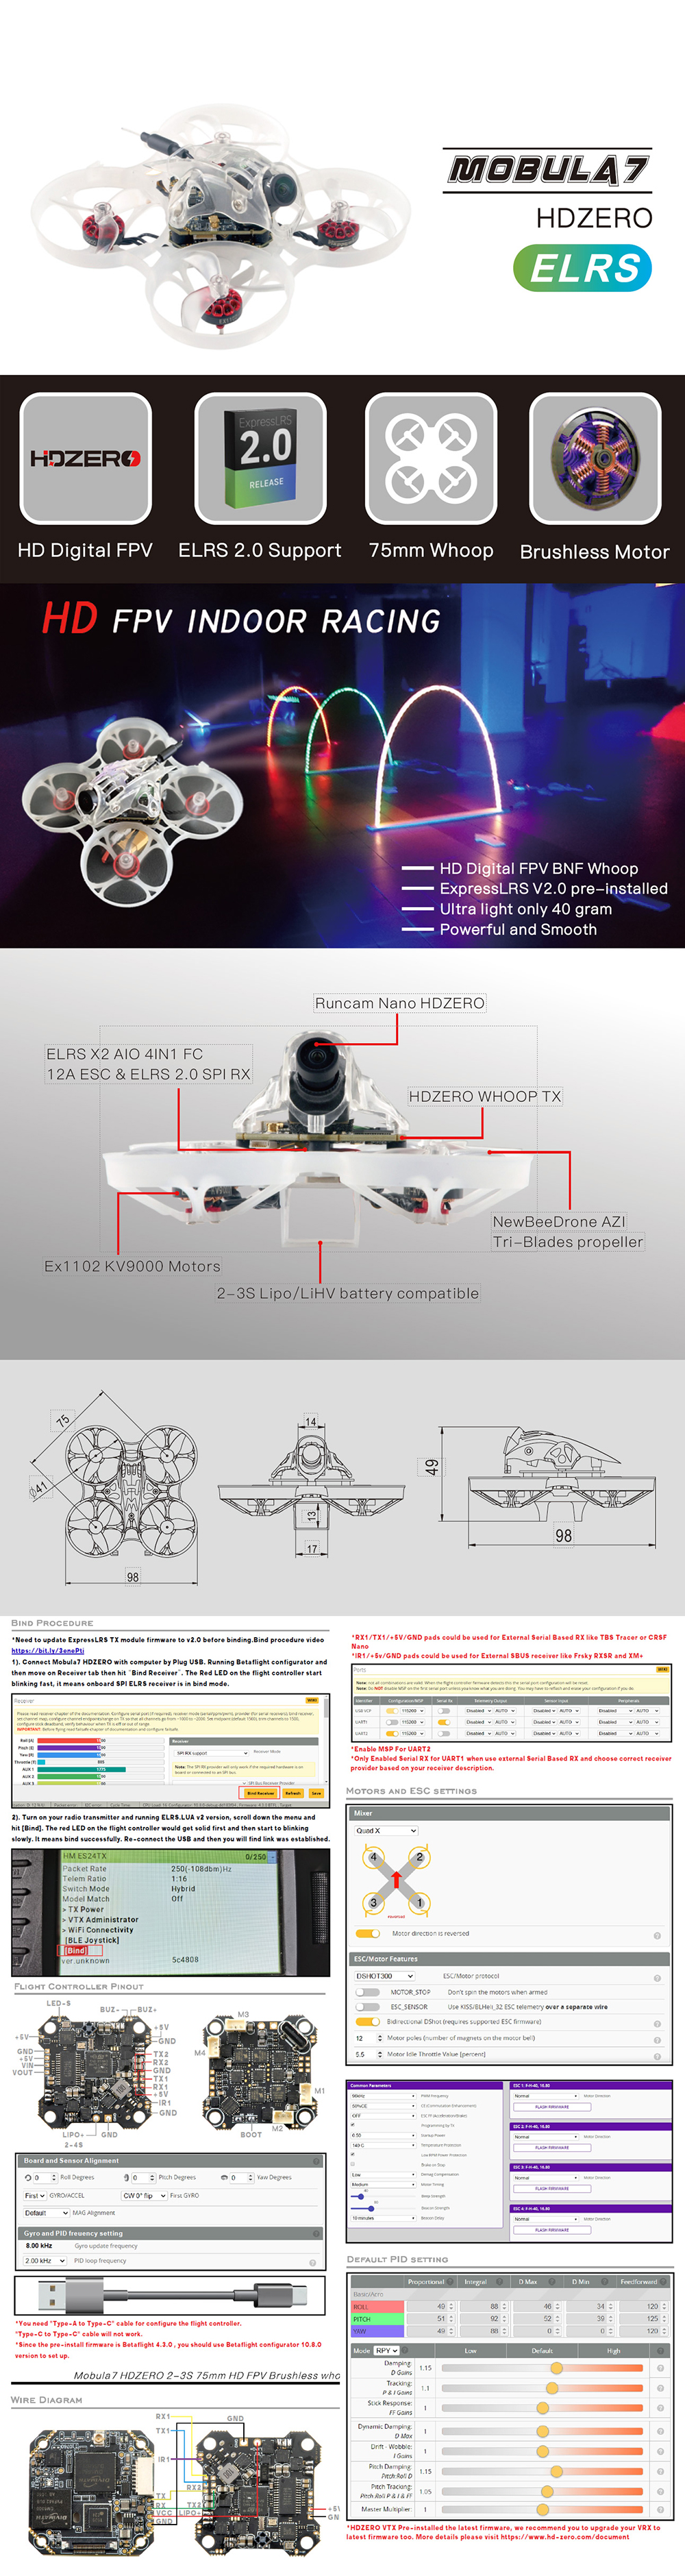 Happymodel-Mobula7-HDZero-75mm-2-3S-Whoop-FPV-Racing-Drone-BNF-wELRS-Receiver-RunCam-Nano-HDZero-Cam-1928491-1